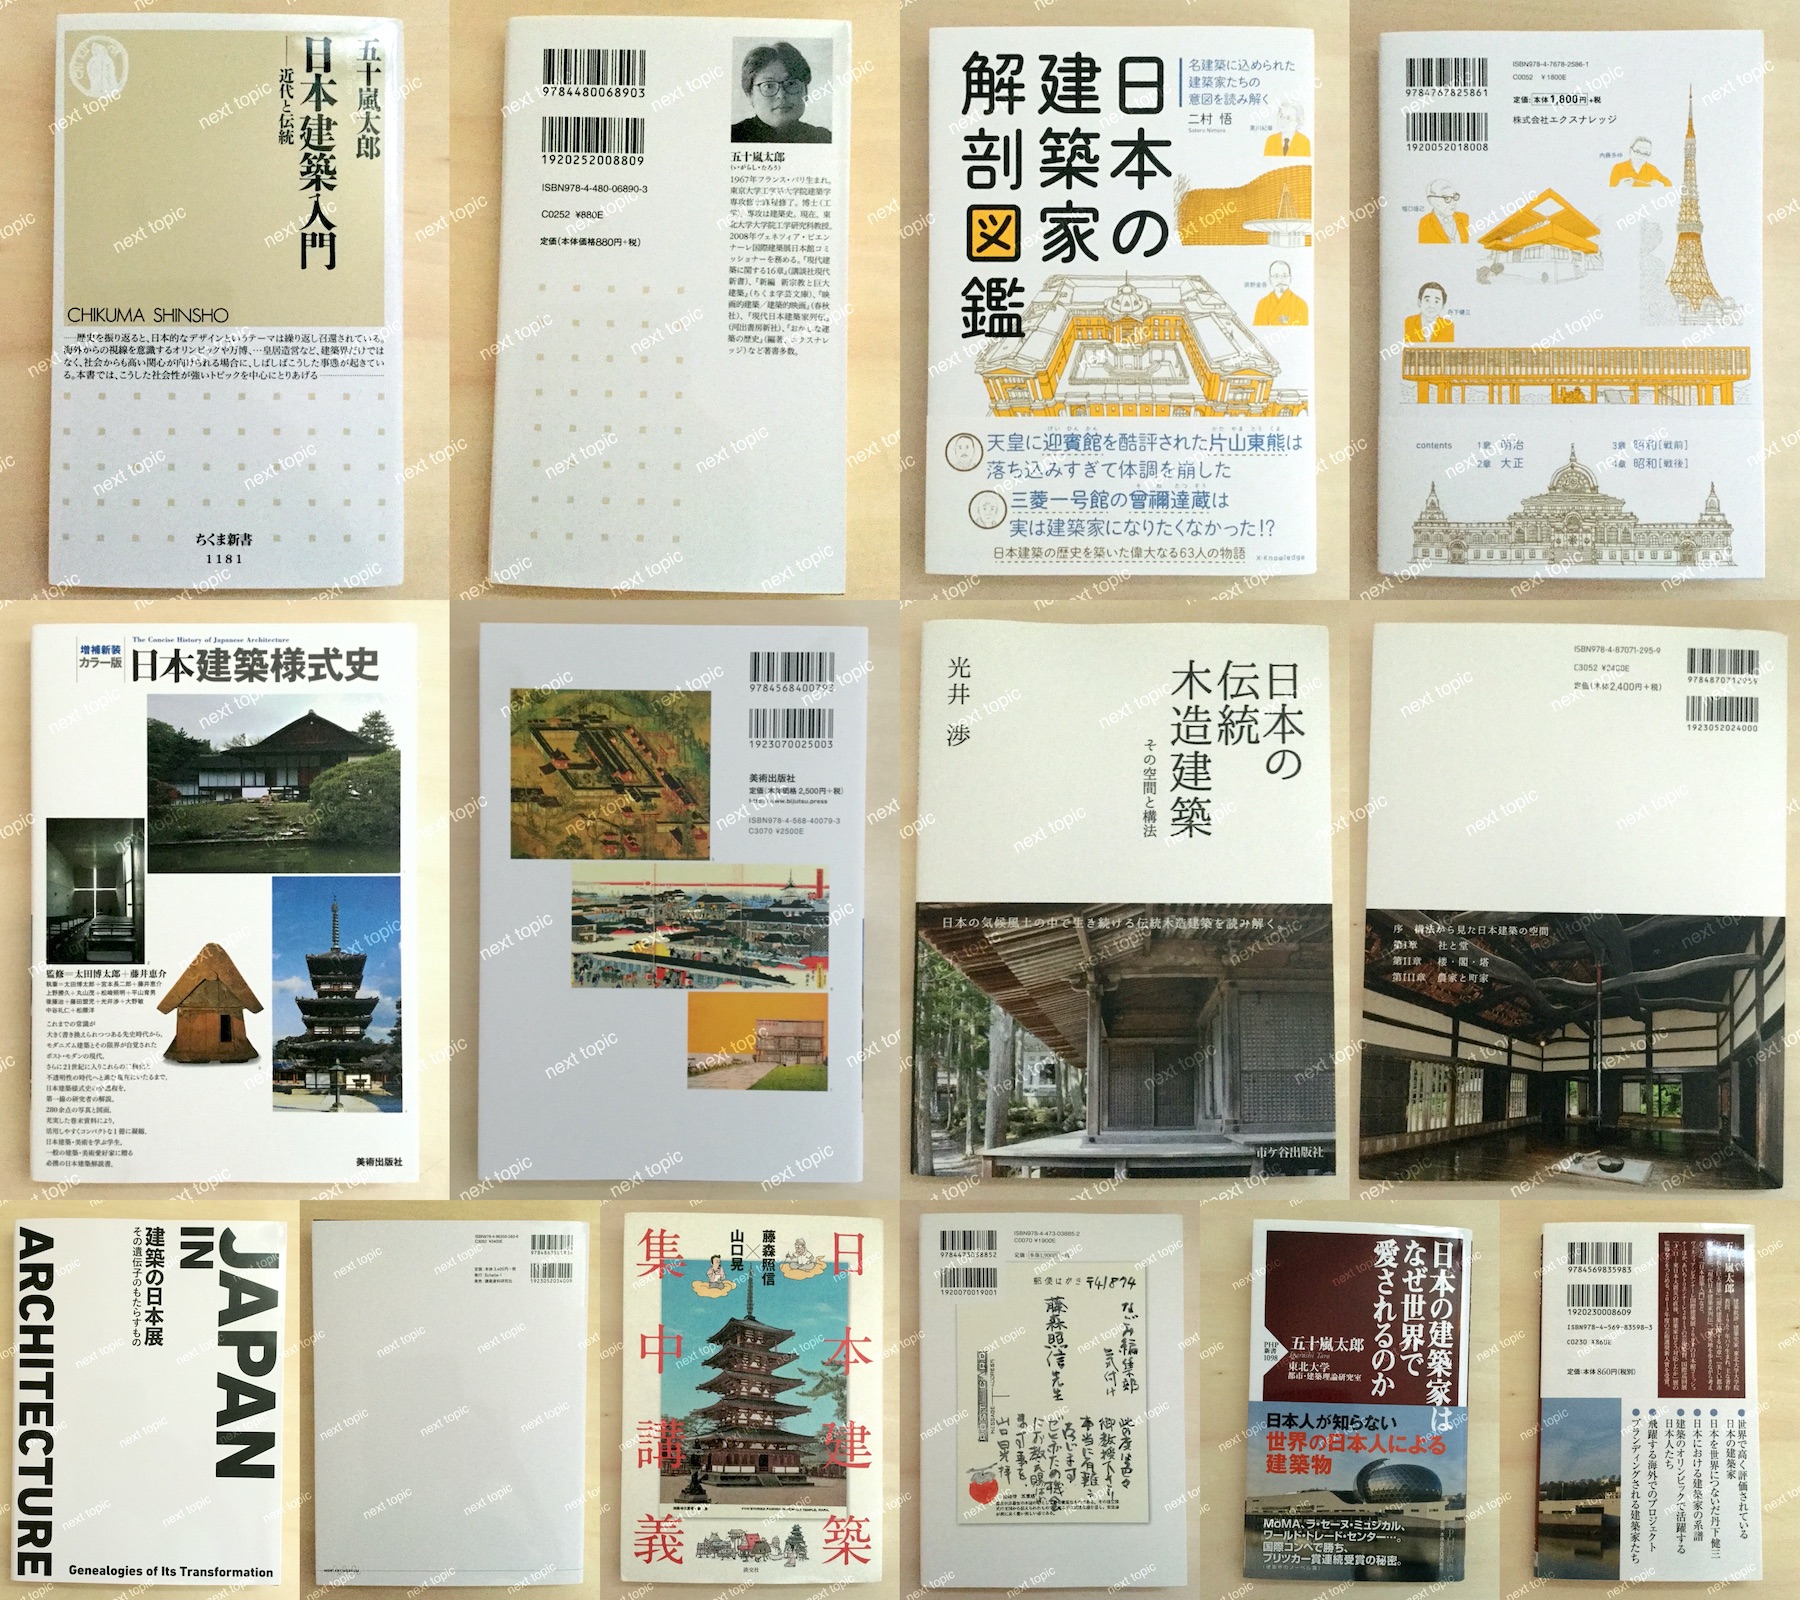 最新/中身も確認!】日本建築を学ぶおすすめ本 - 特徴、歴史、構造も知る! | next topic